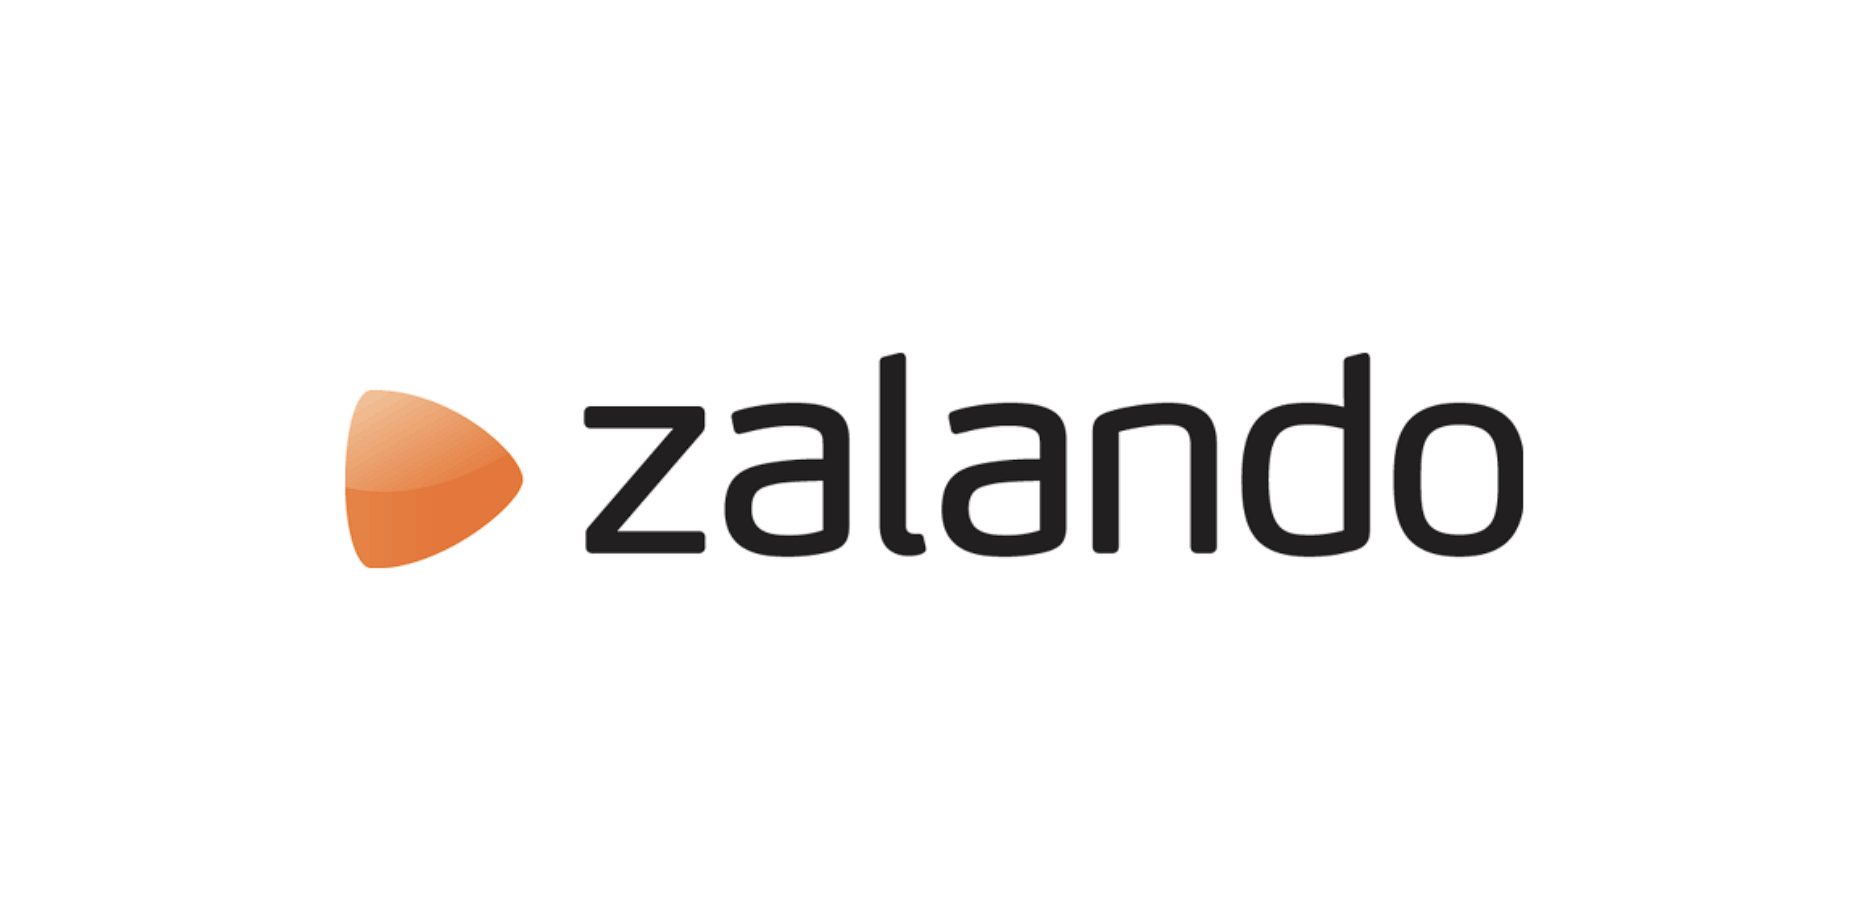 Verkopen op Zalando met ChannelDock